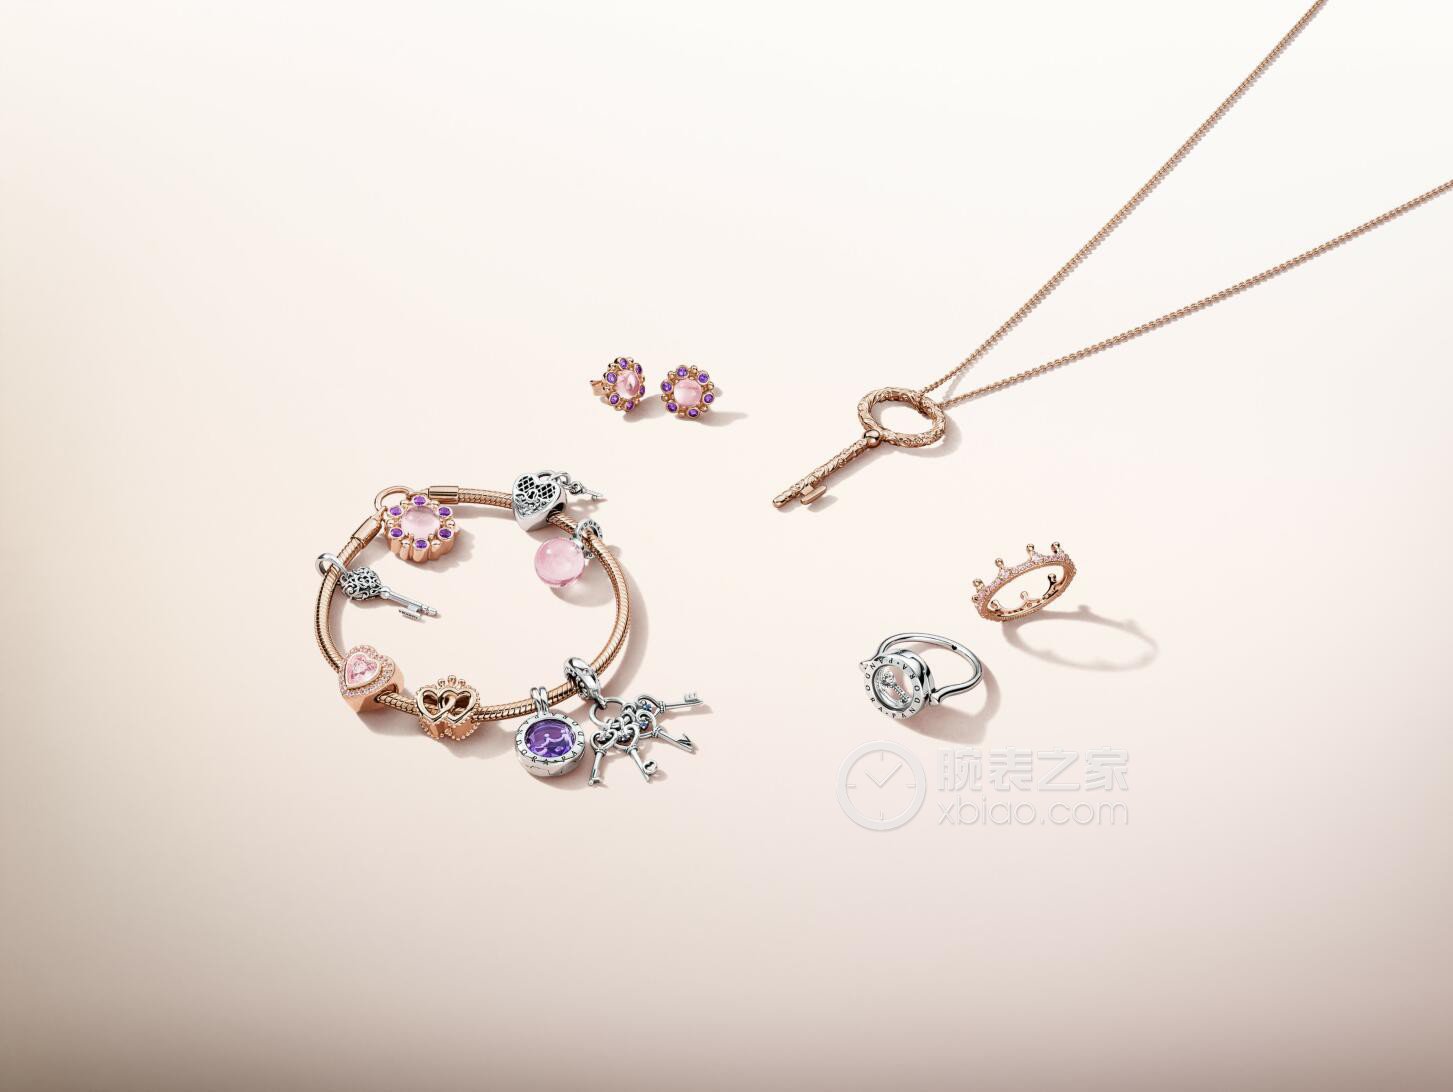 高清图|潘多拉ESSENCE VALENTINE'S GIFT SET套系图片1|腕表之家-珠宝